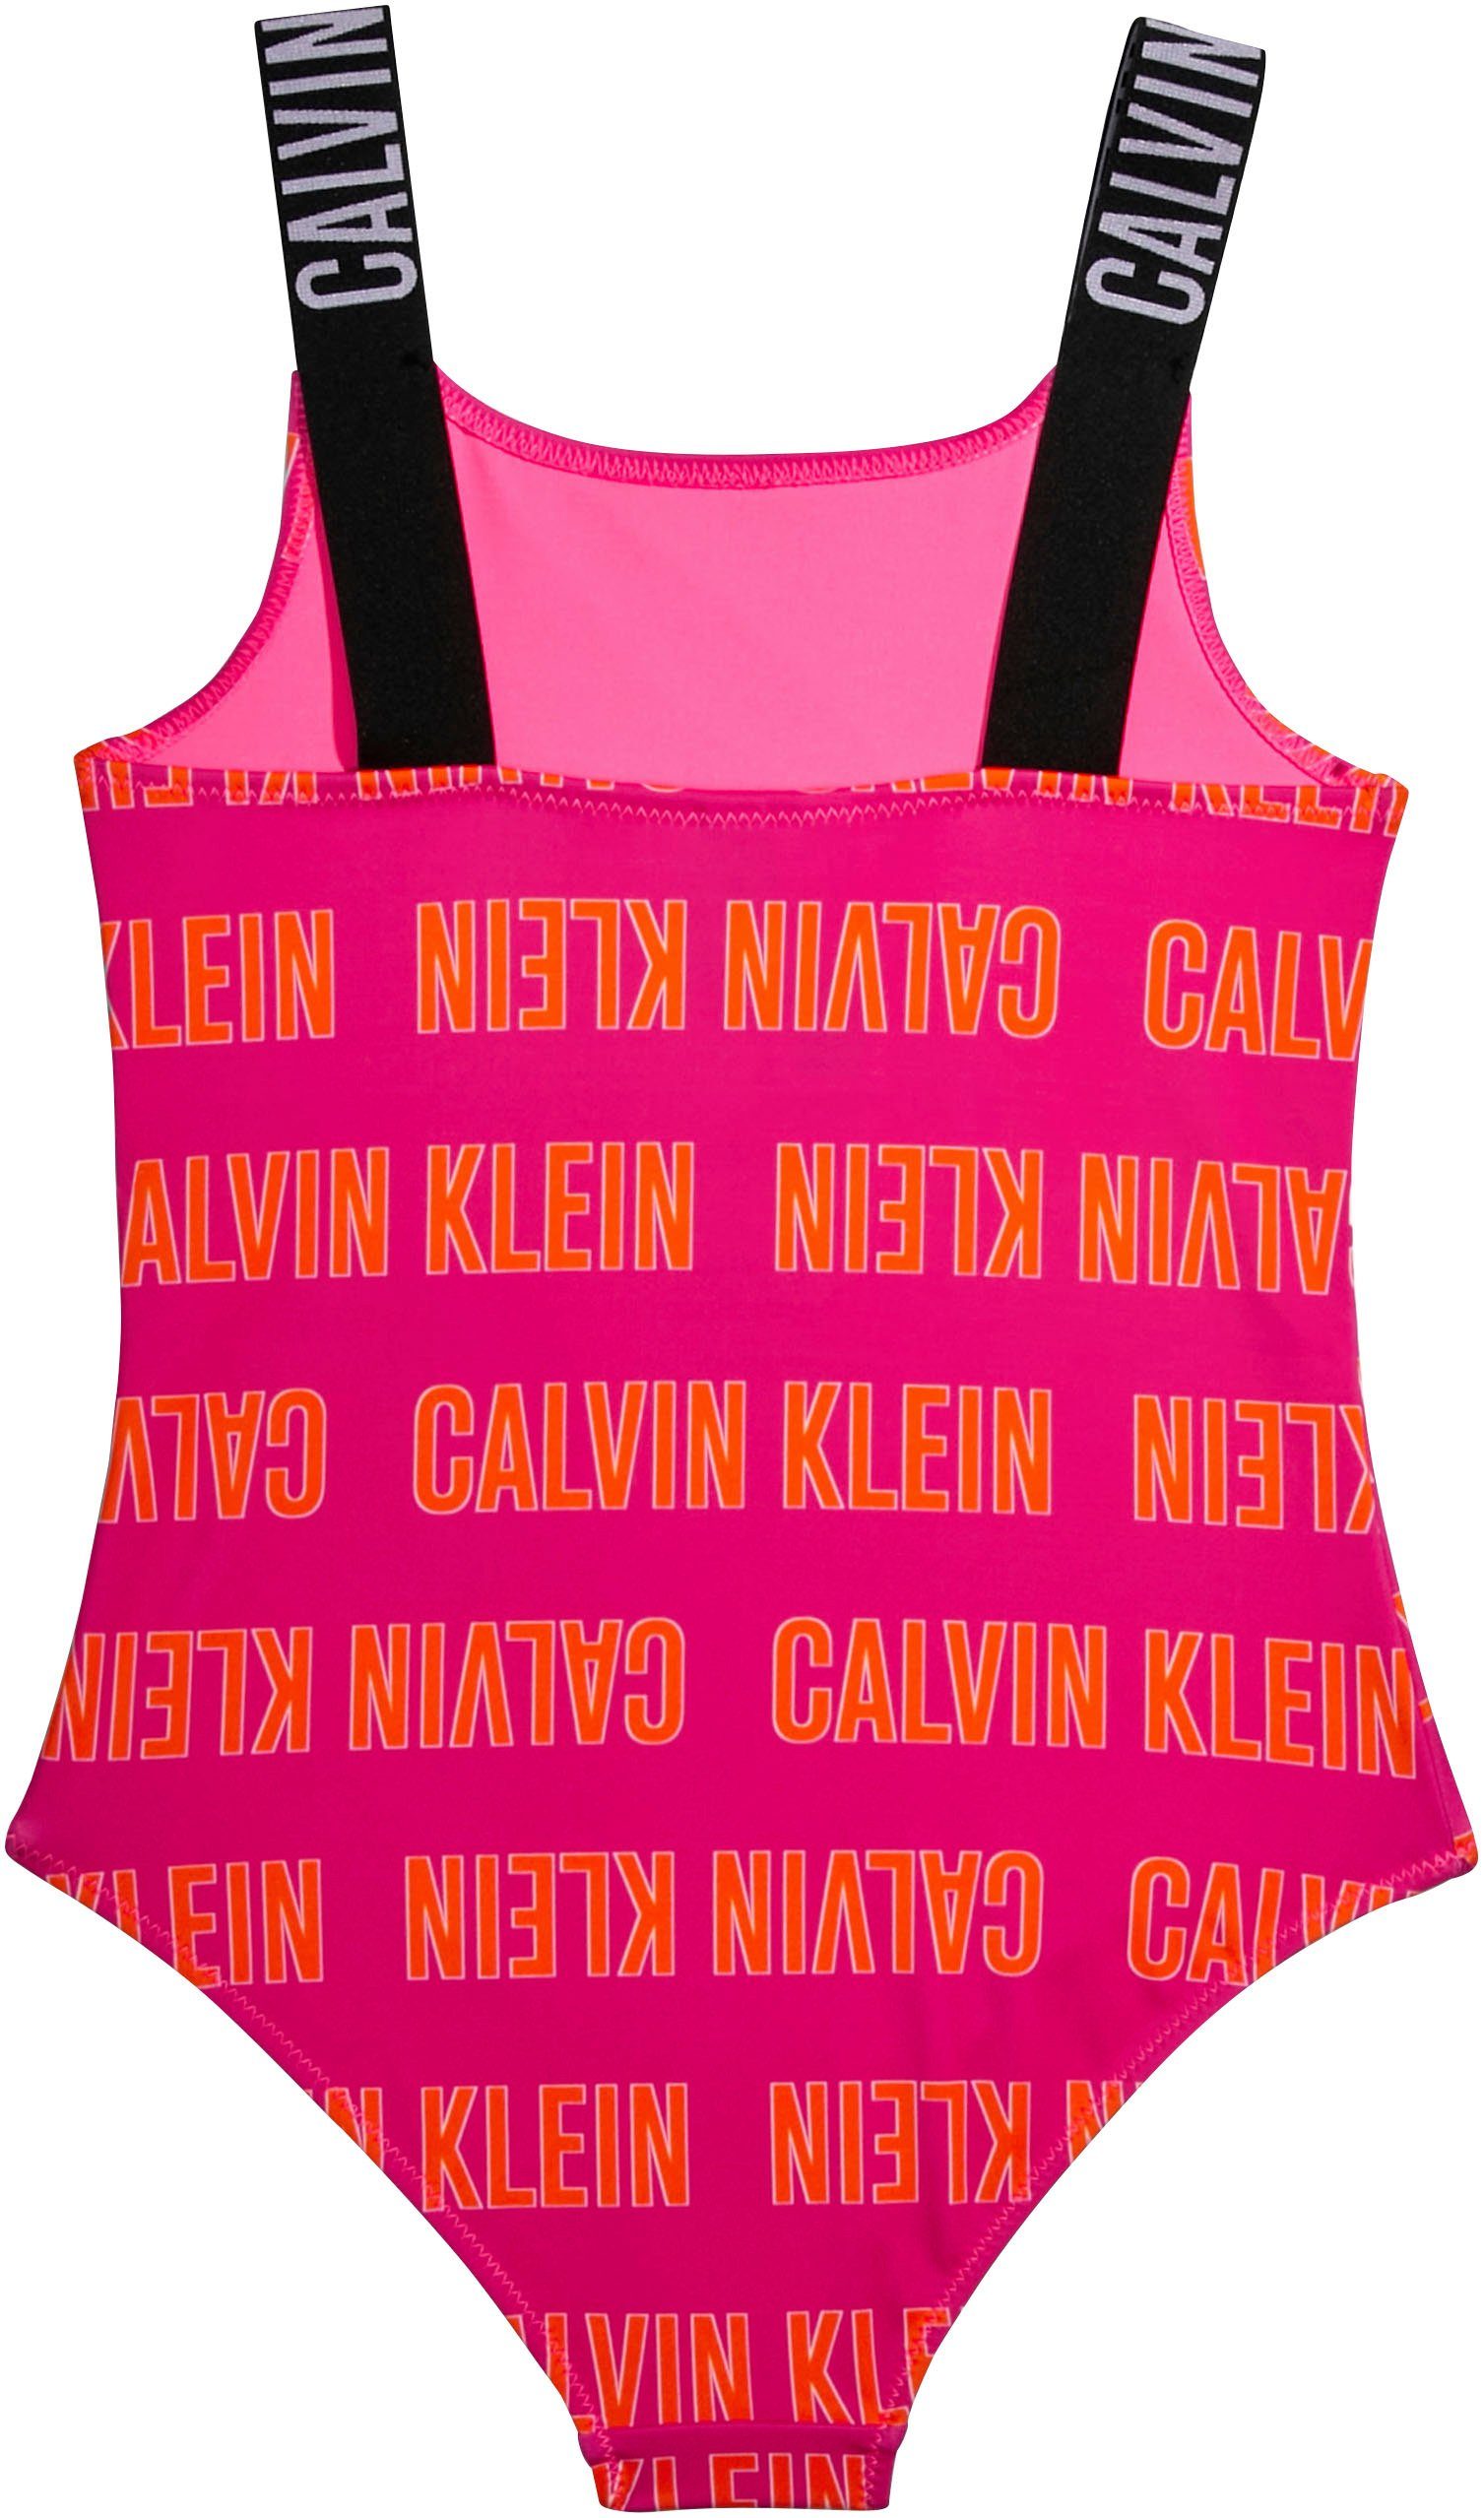 SWIMSUIT-PRINT Calvin mit Klein Calvin Brandwording Badeanzug Swimwear Klein